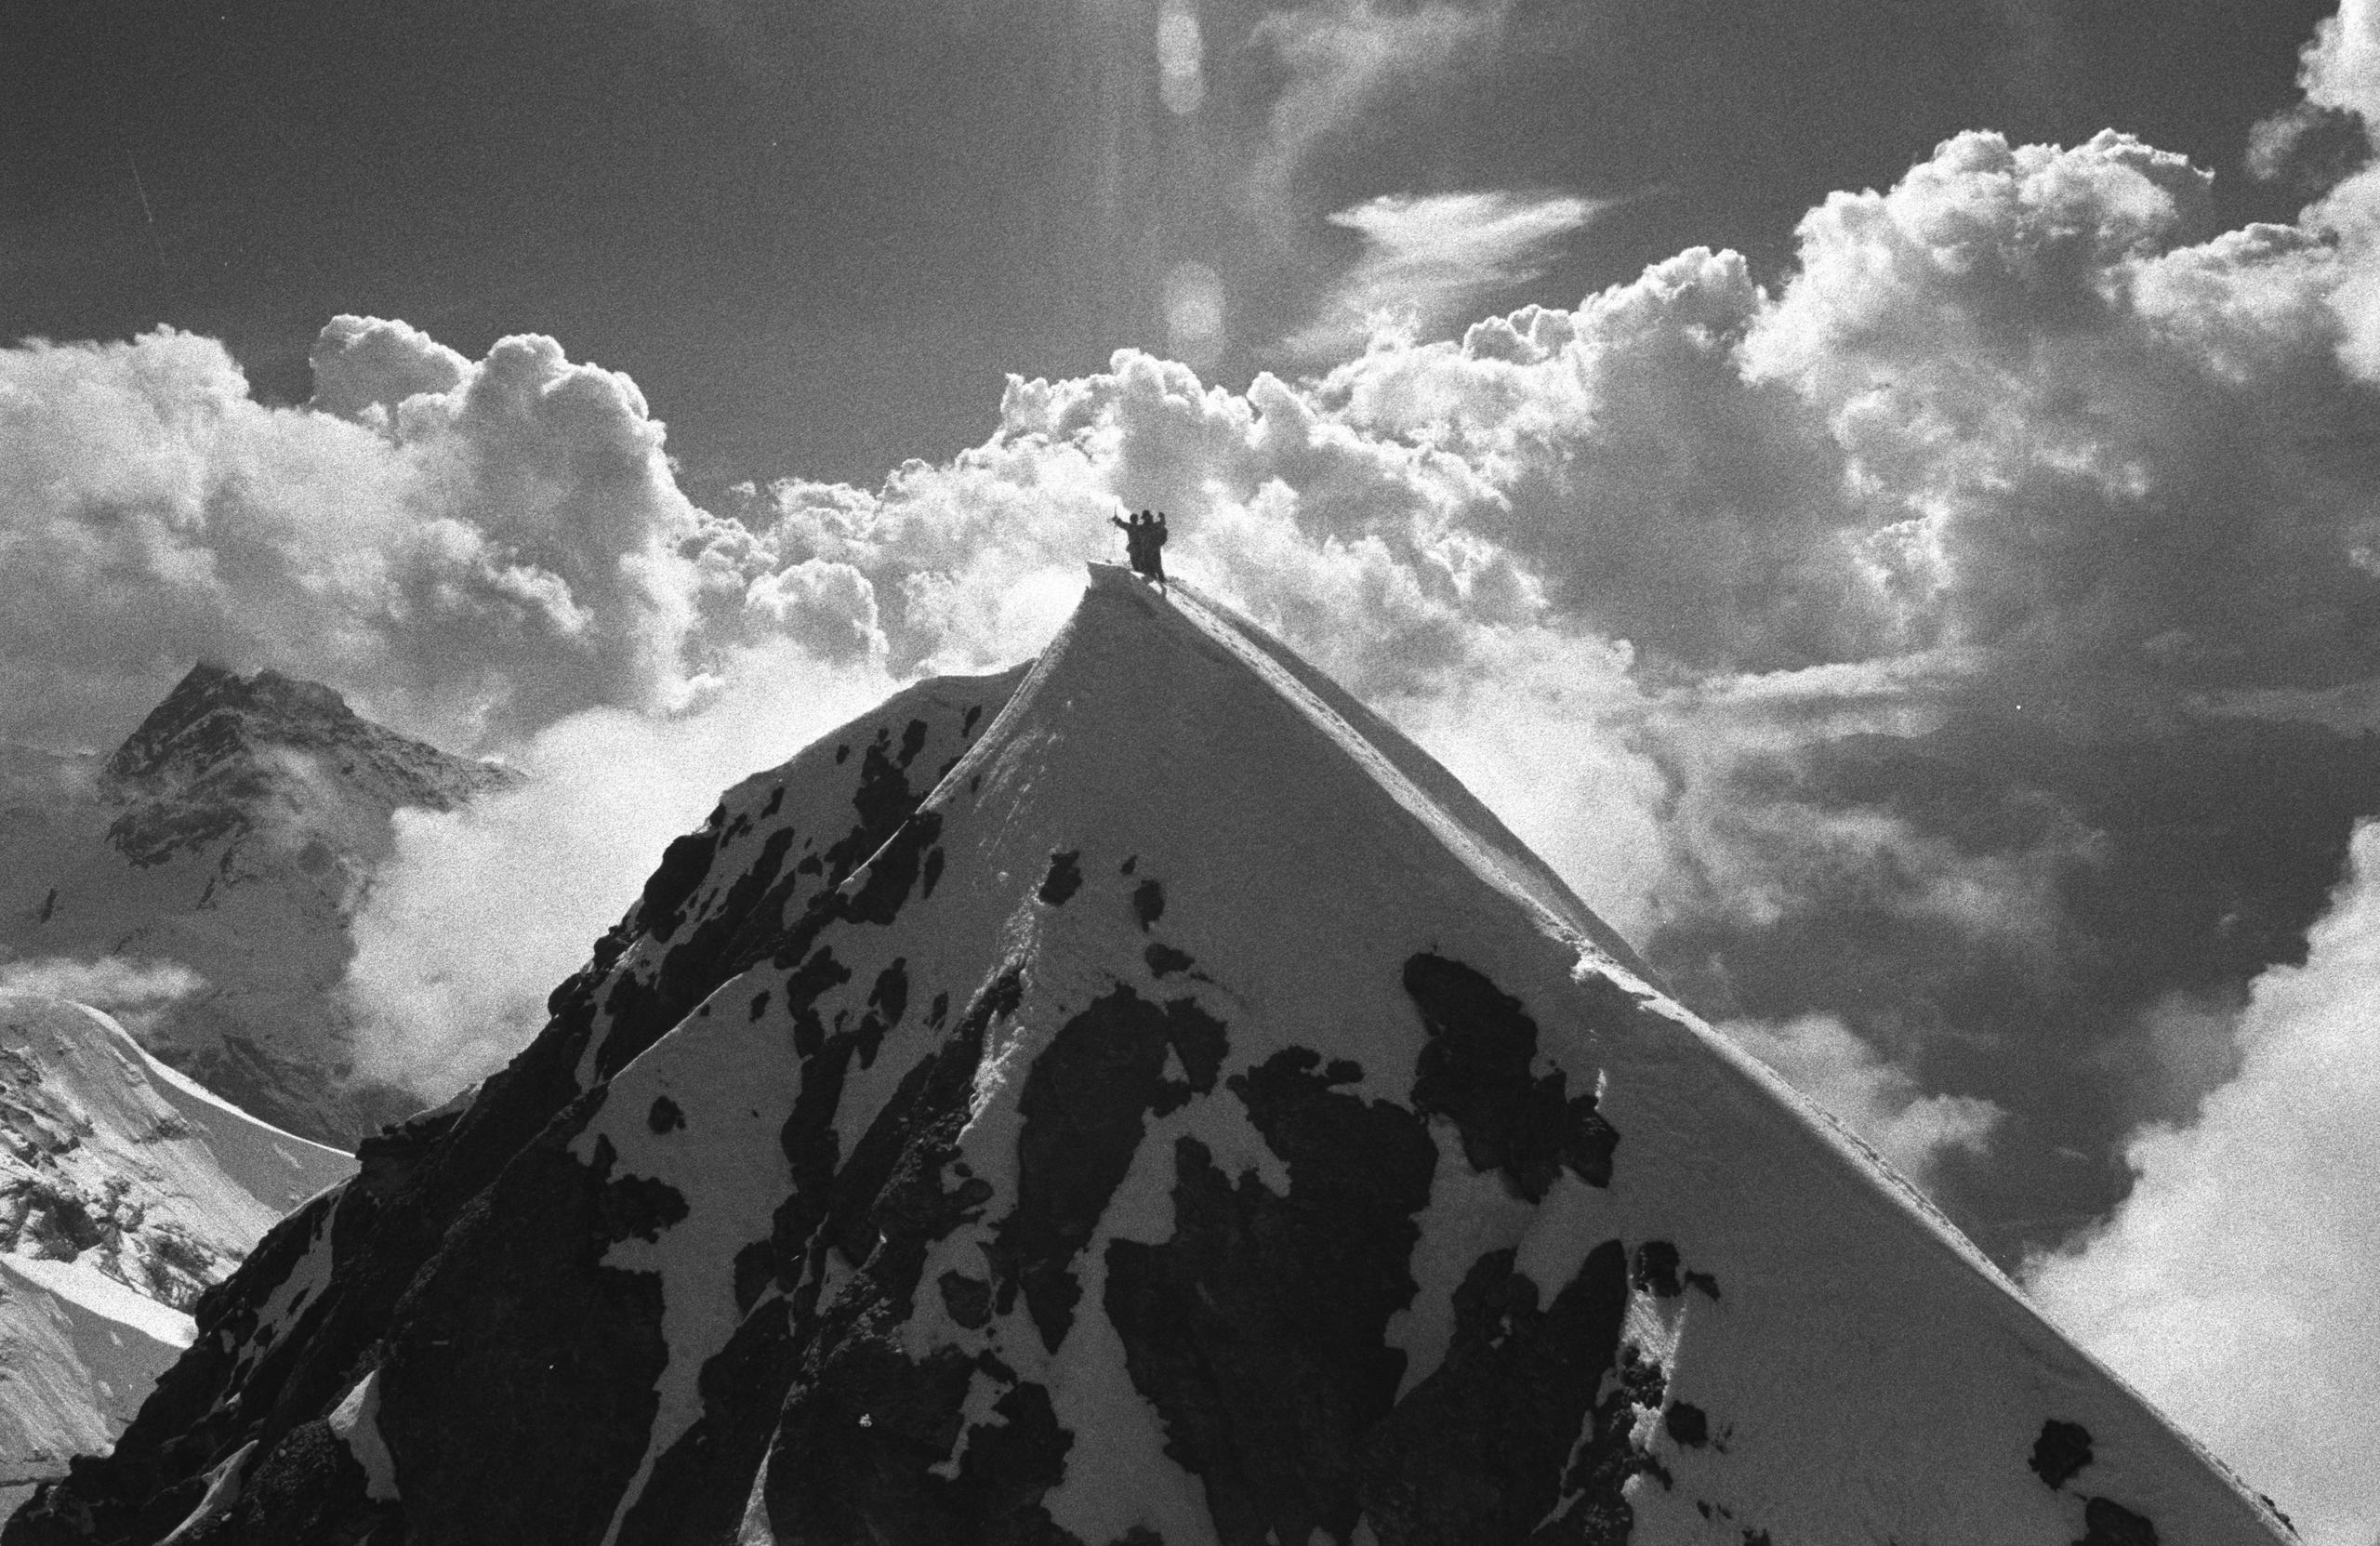 Vista panorámica de una montaña con dos hombres en la cima.